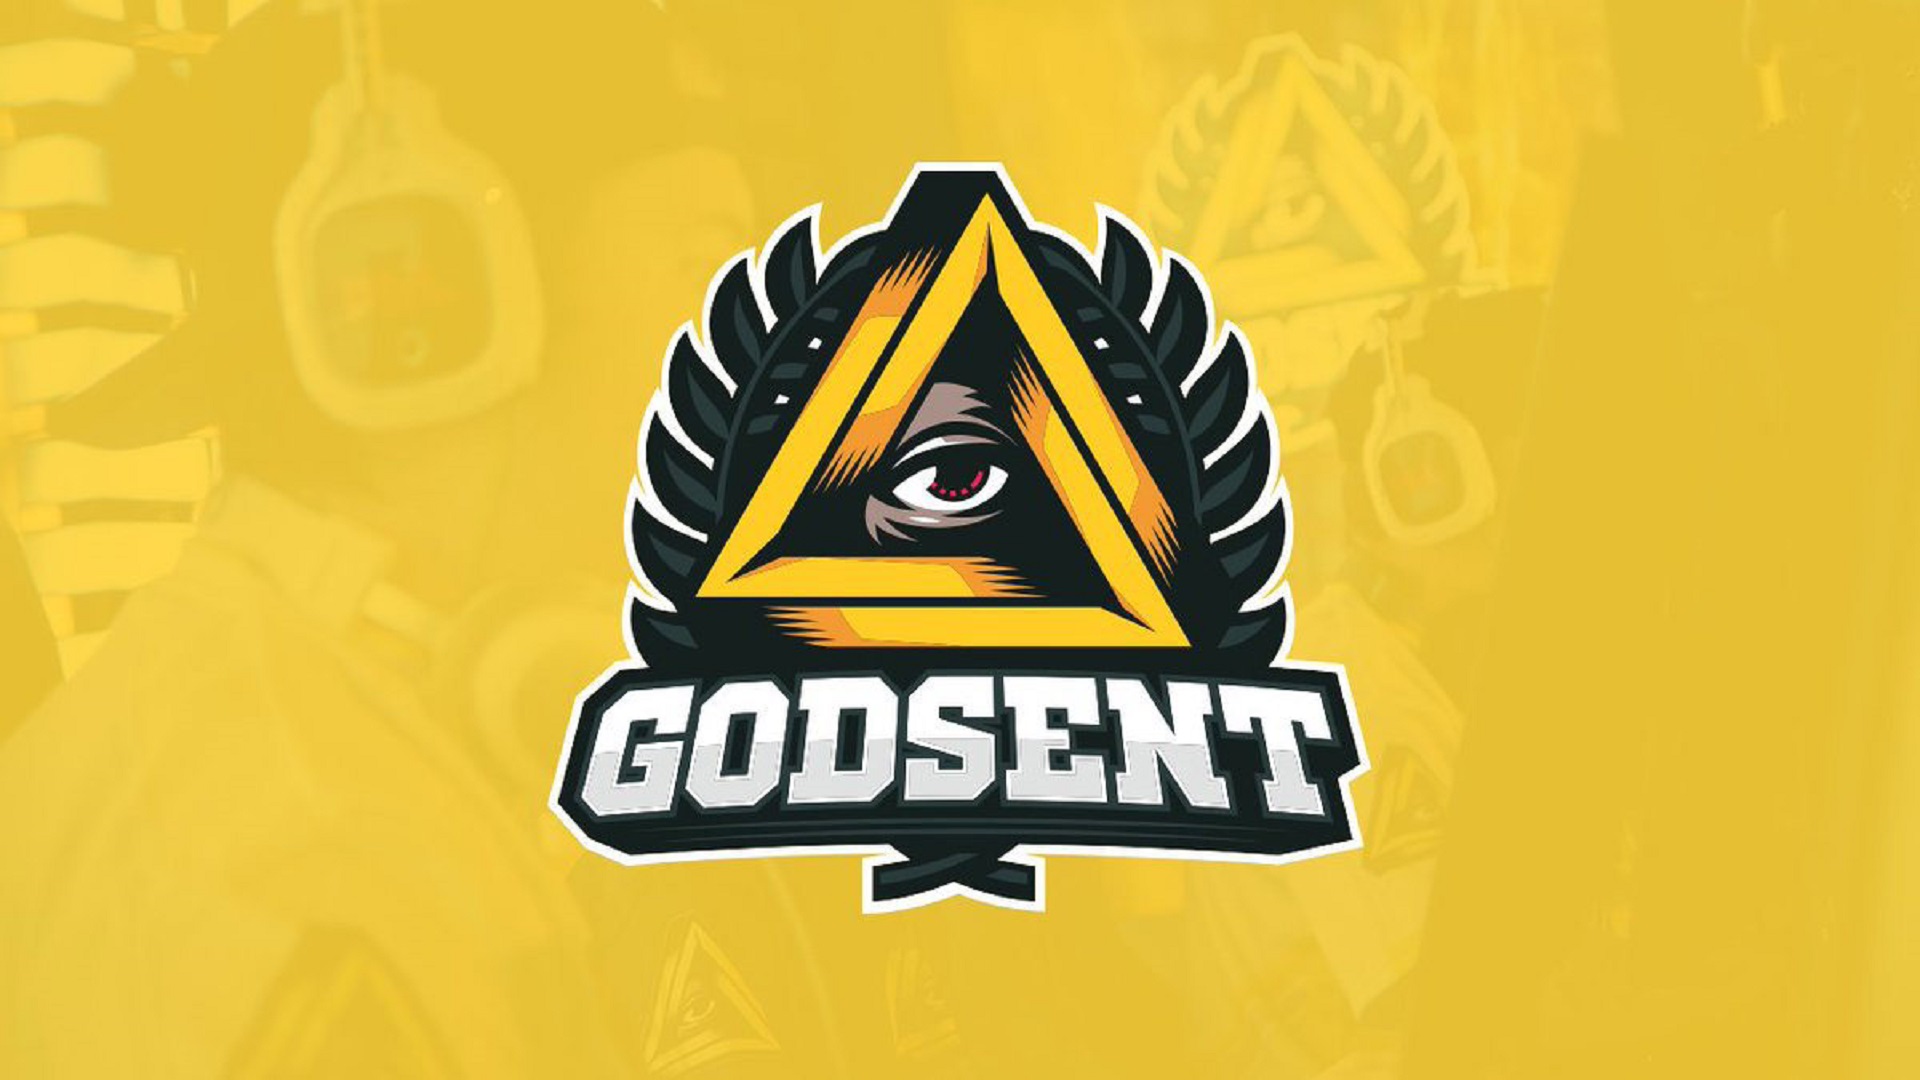 GODSENT представила новый состав по CS:GO – в него вошли Golden, Plopski и ztr